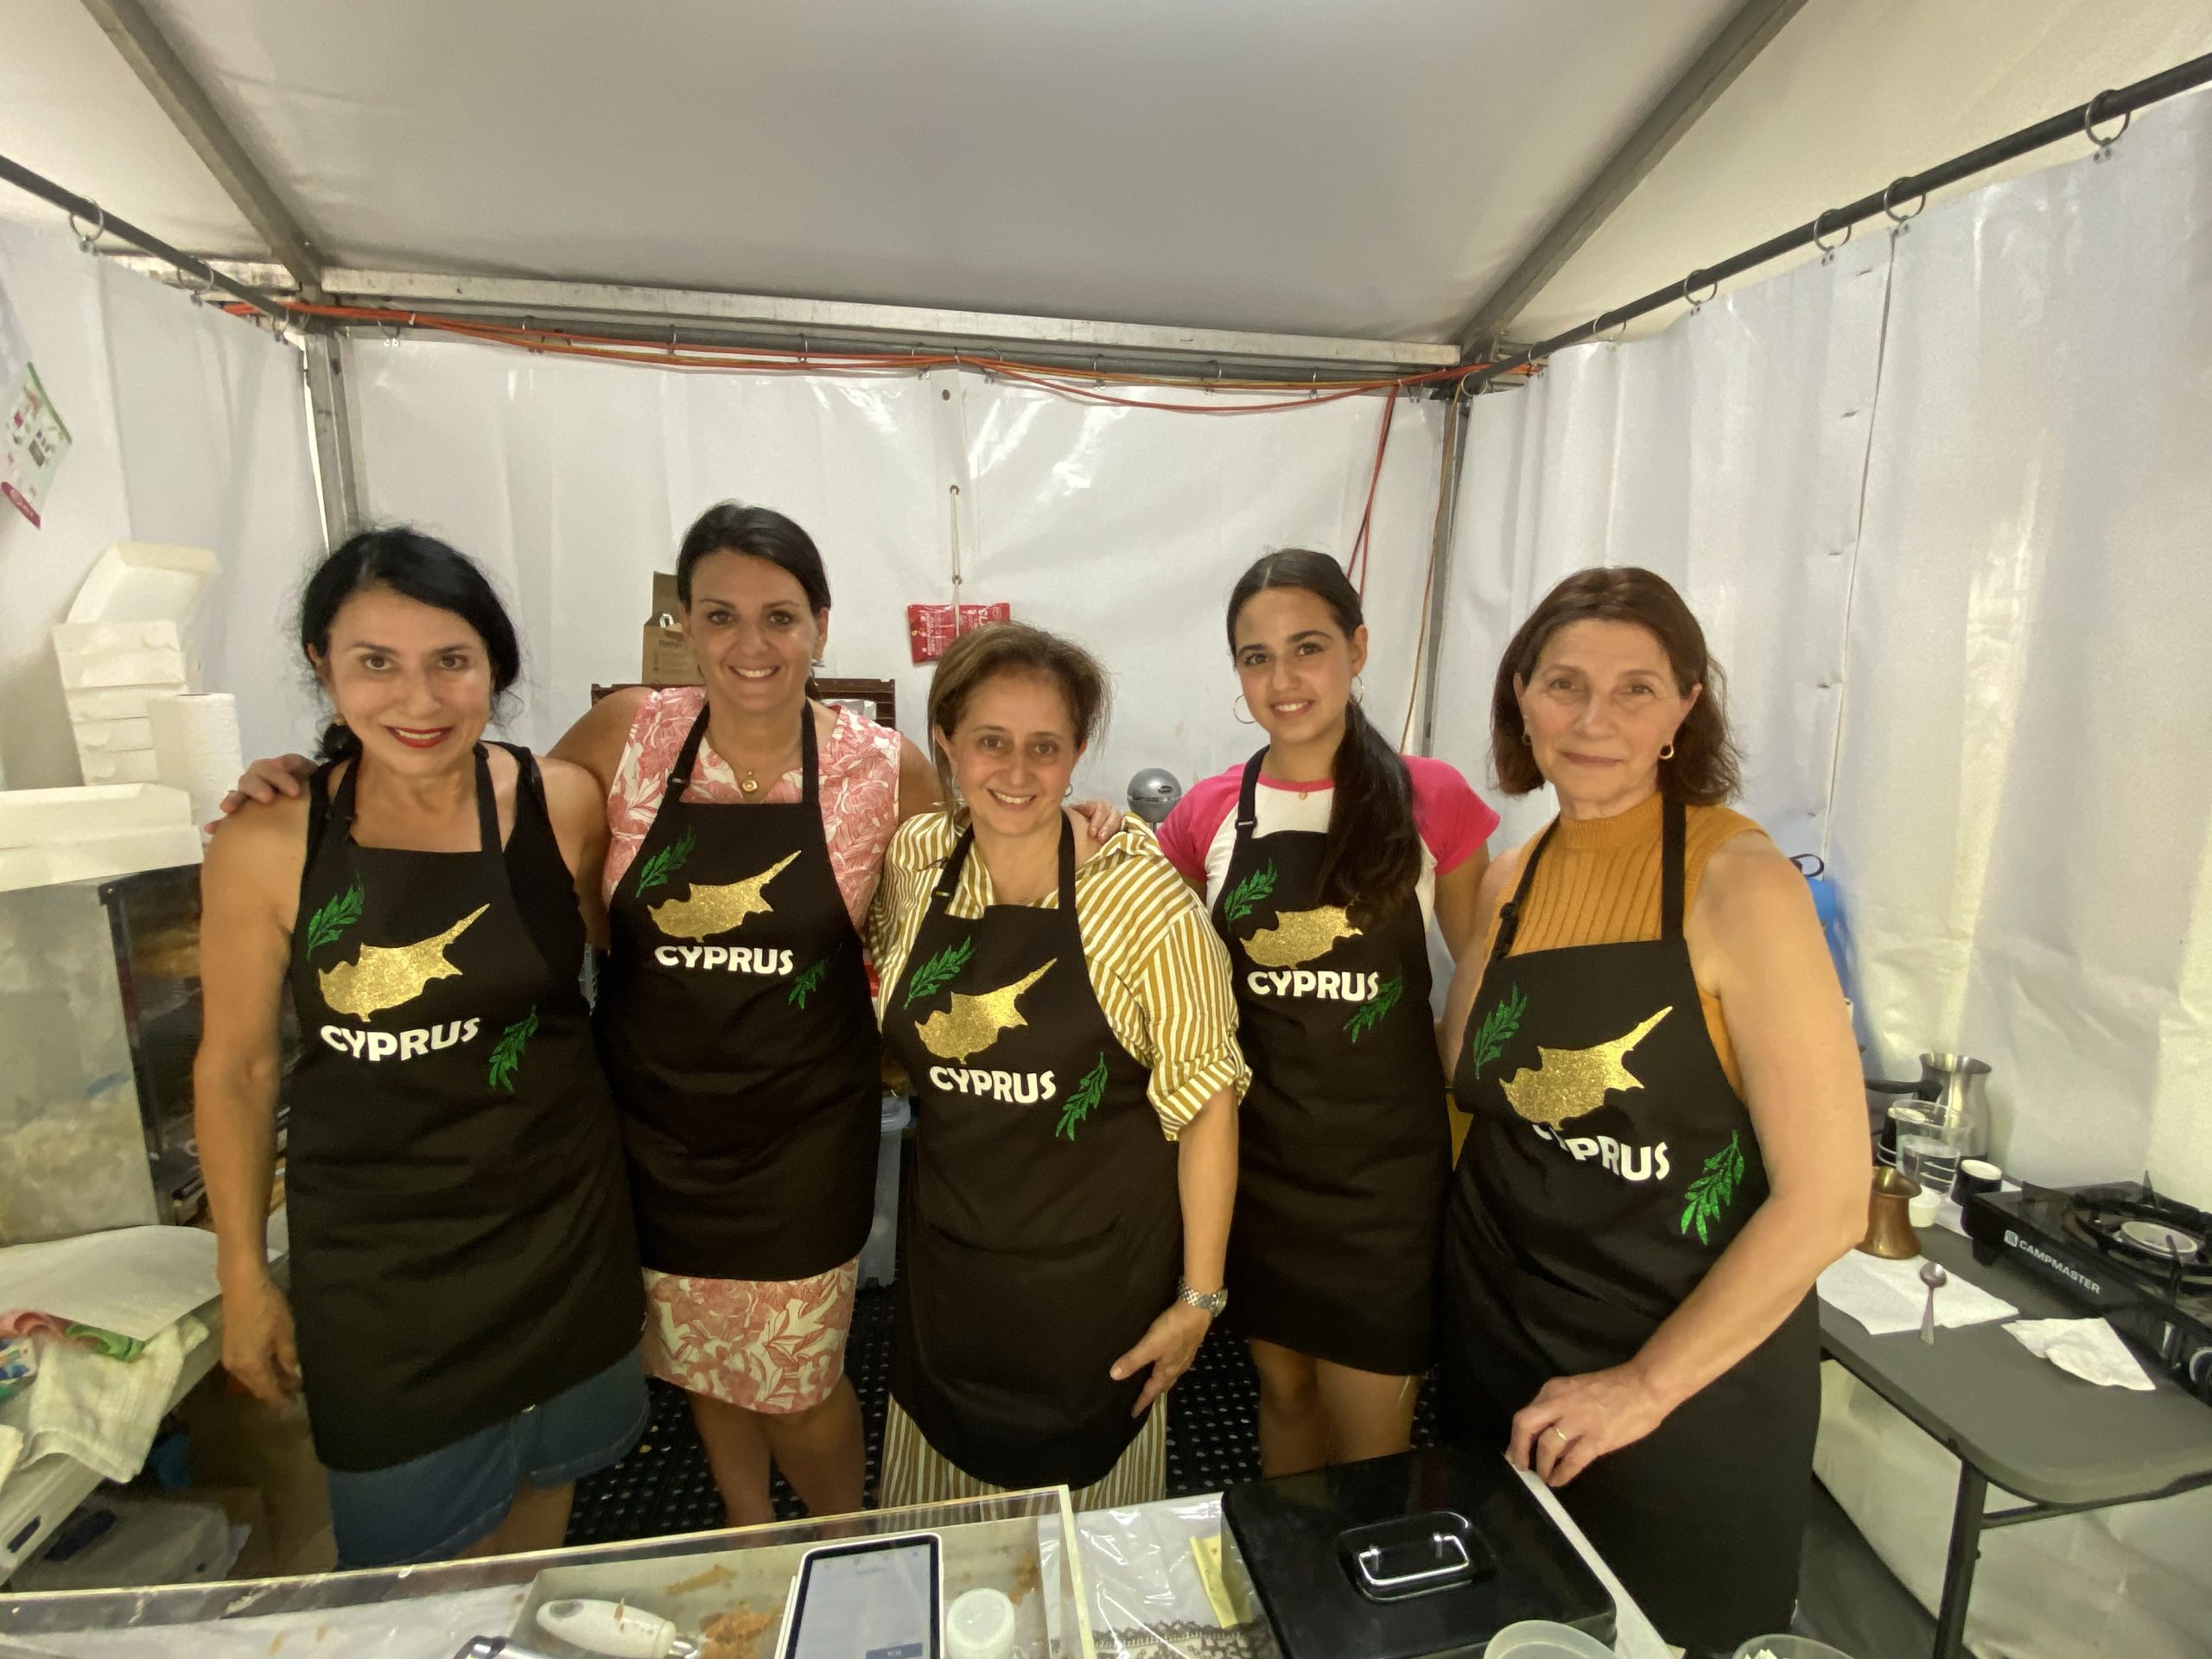 Cyprus Kafenio helpers